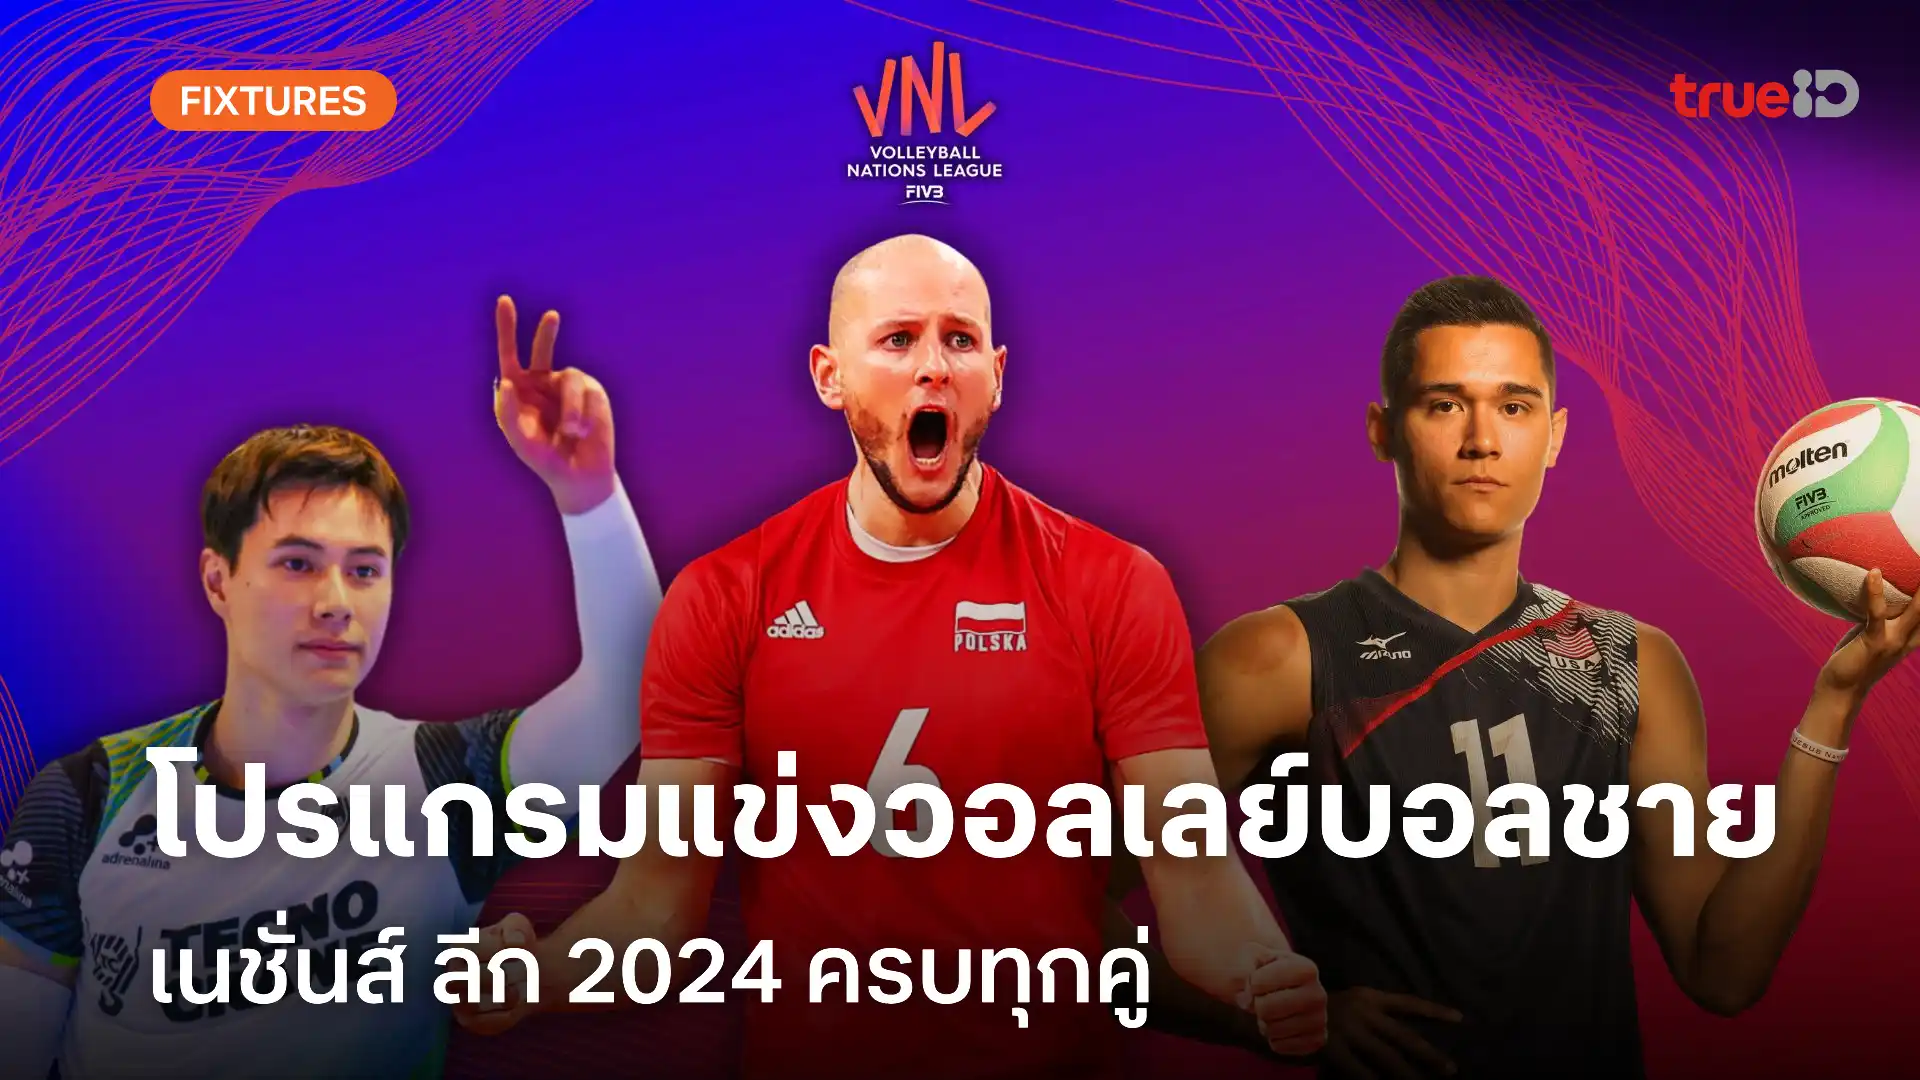 โปรแกรมแข่งวอลเลย์บอลเนชั่นส์ ลีก ทีมชาย VNL 2024 แข่งวันไหน ครบทุกคู่